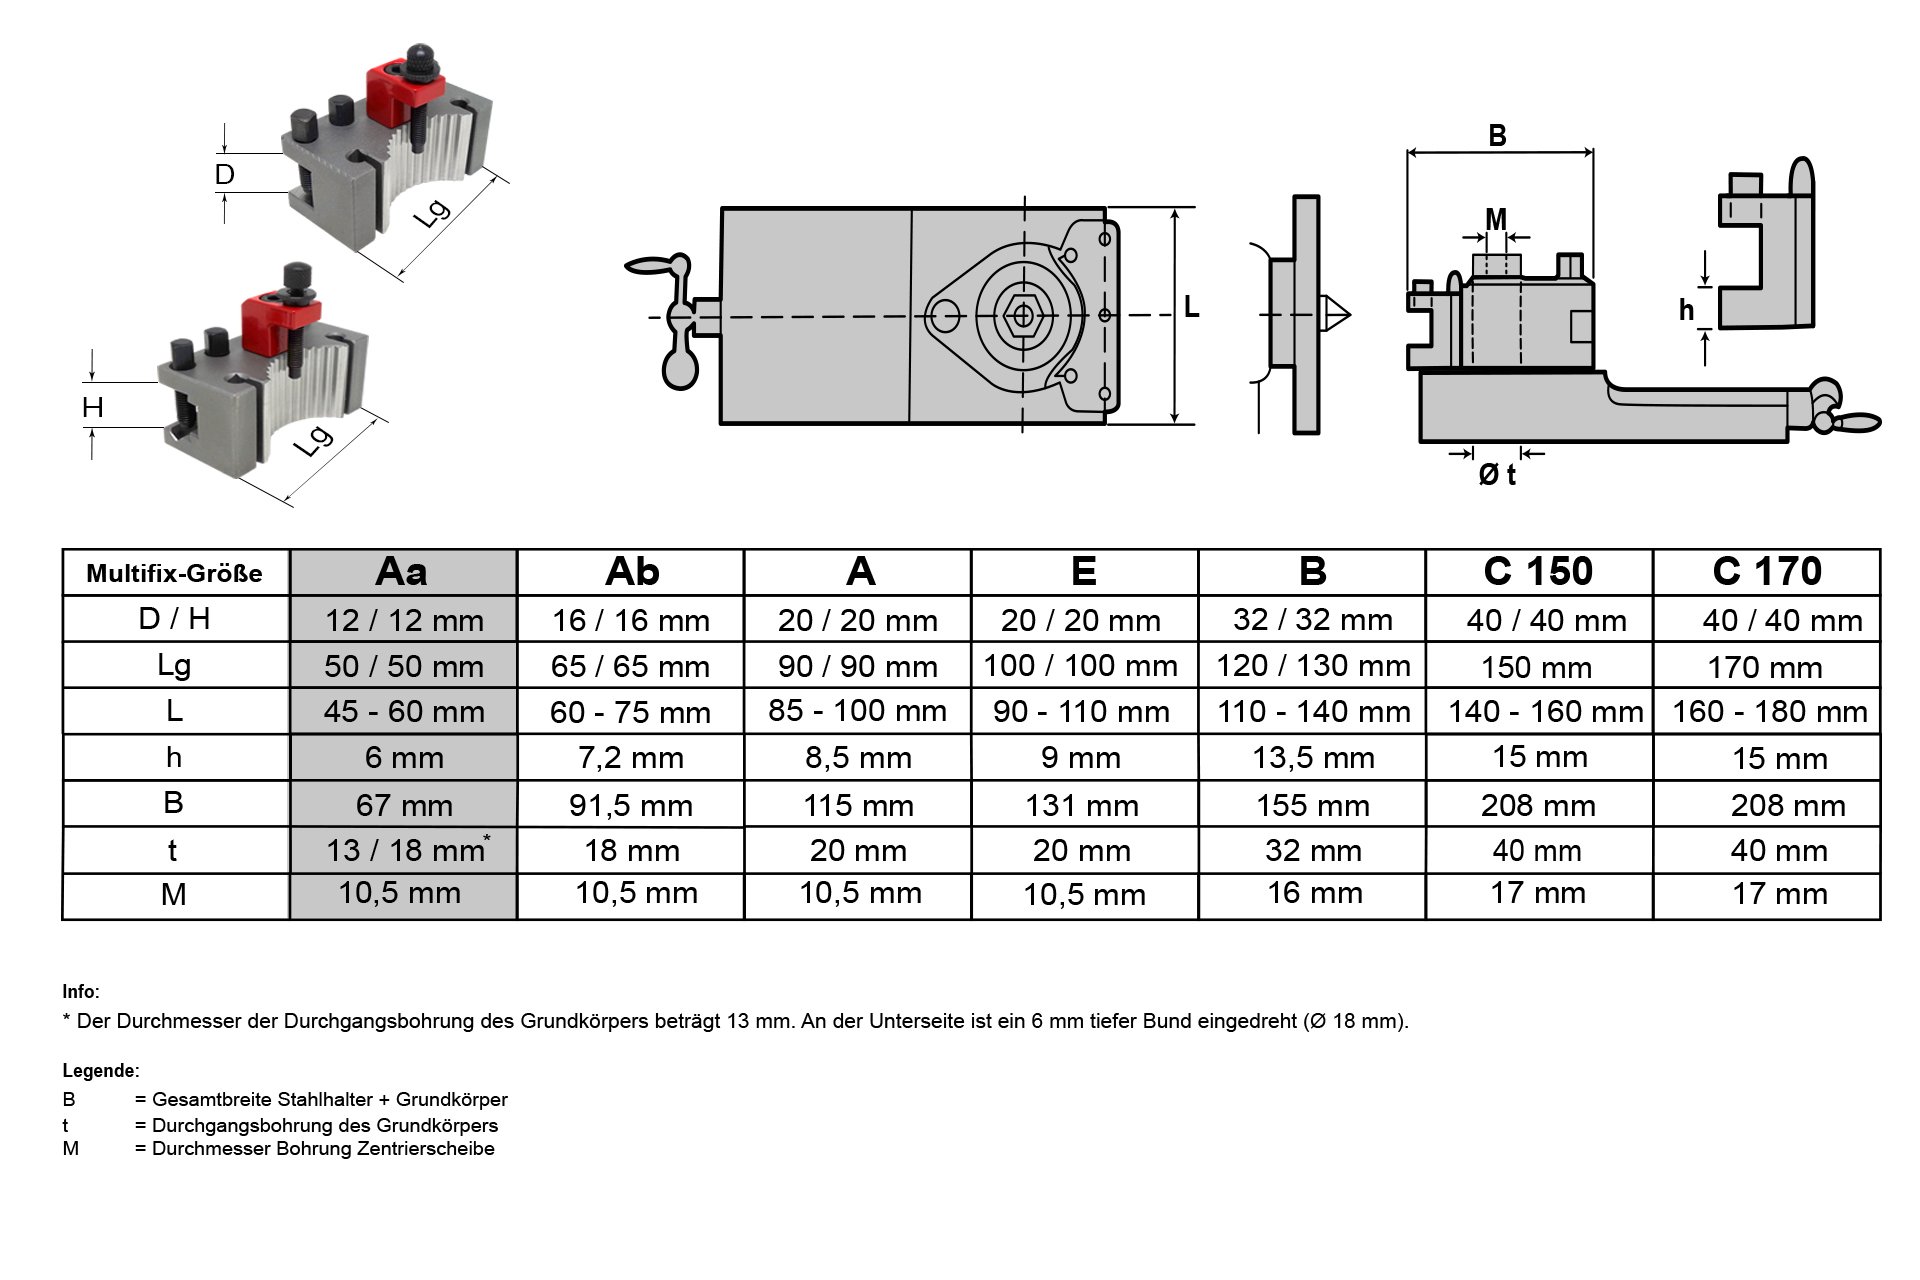 Schnellwechsel-Stahlhalter-Set, System "Multifix", Größe Aa